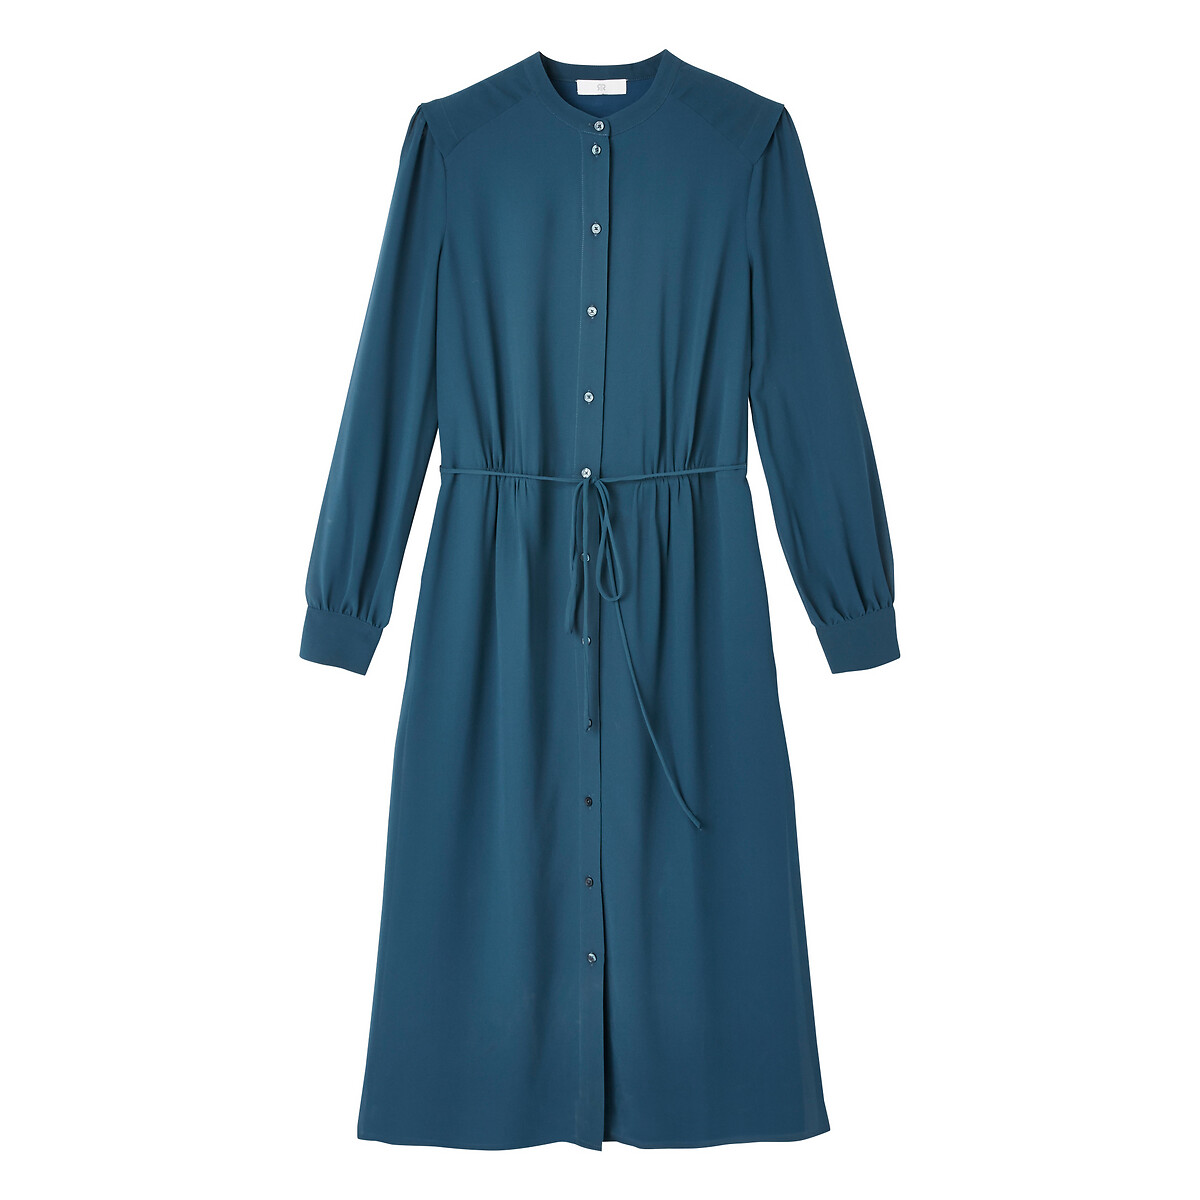 Платье-рубашка La Redoute С круглым вырезом длинные рукава 40 (FR) - 46 (RUS) синий, размер 40 (FR) - 46 (RUS) С круглым вырезом длинные рукава 40 (FR) - 46 (RUS) синий - фото 5